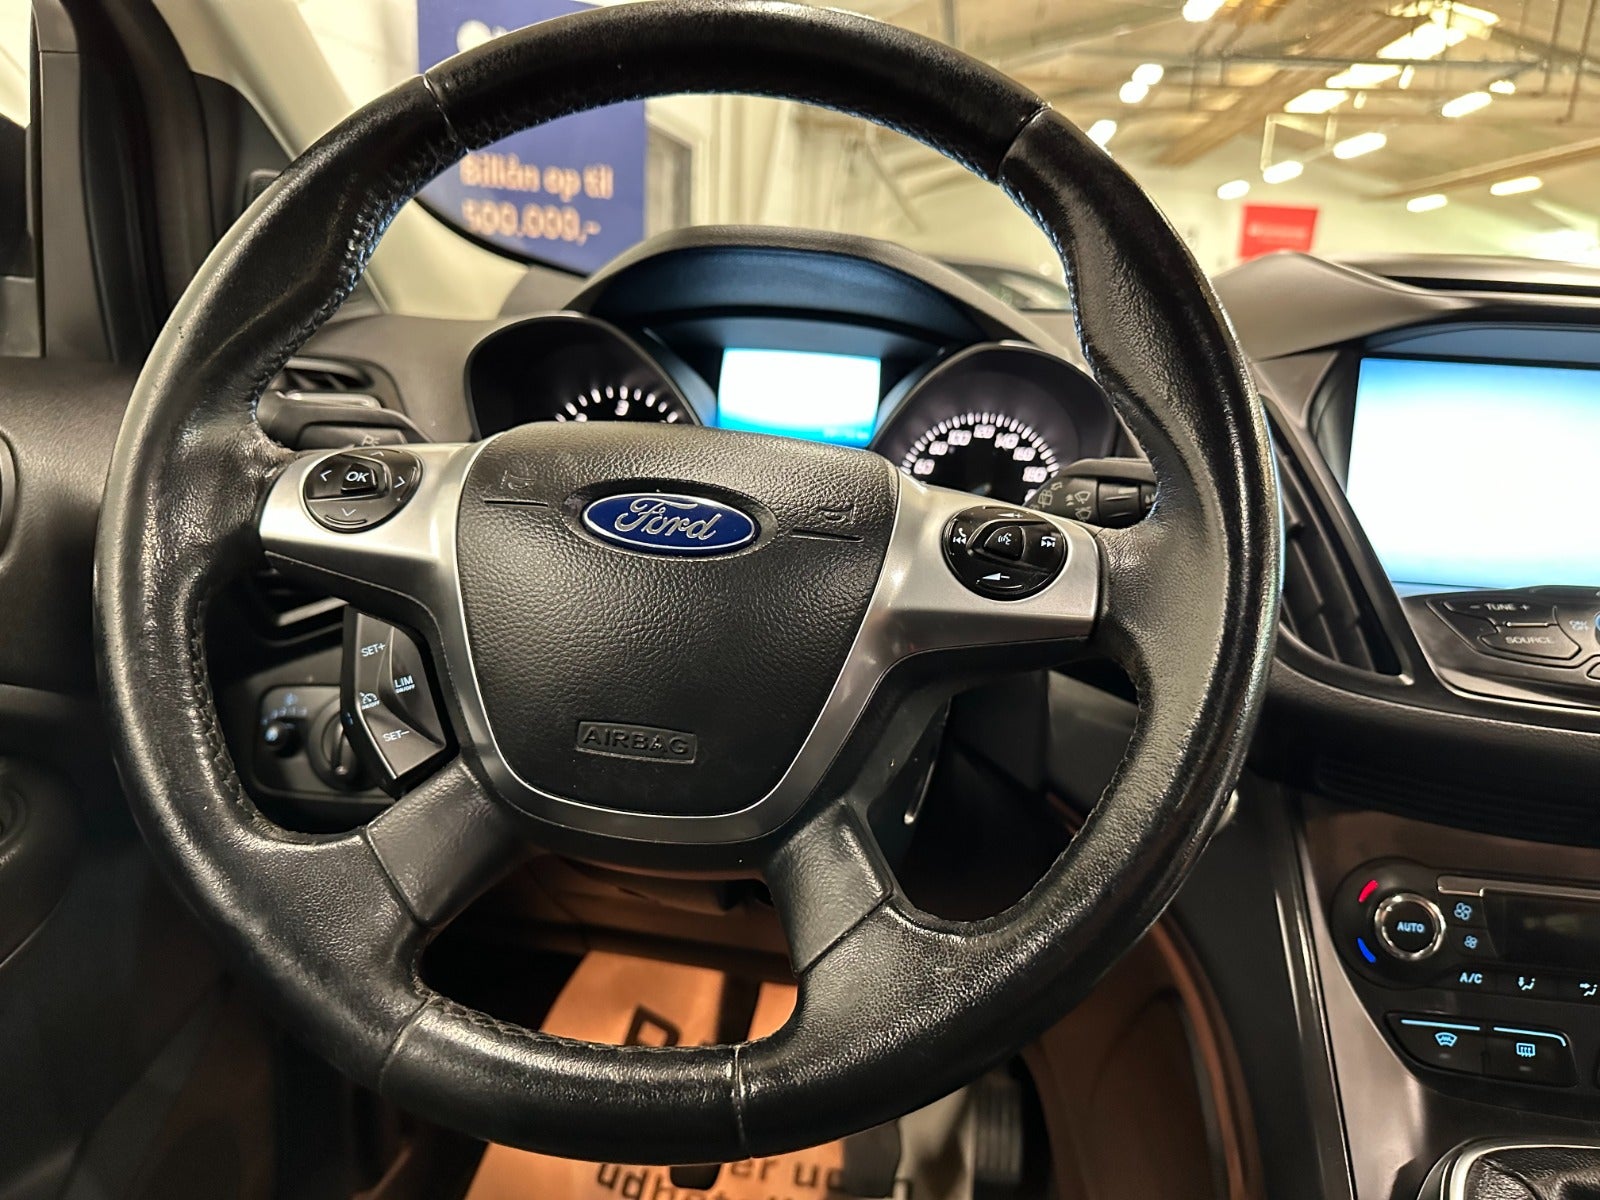 Ford Kuga 2016